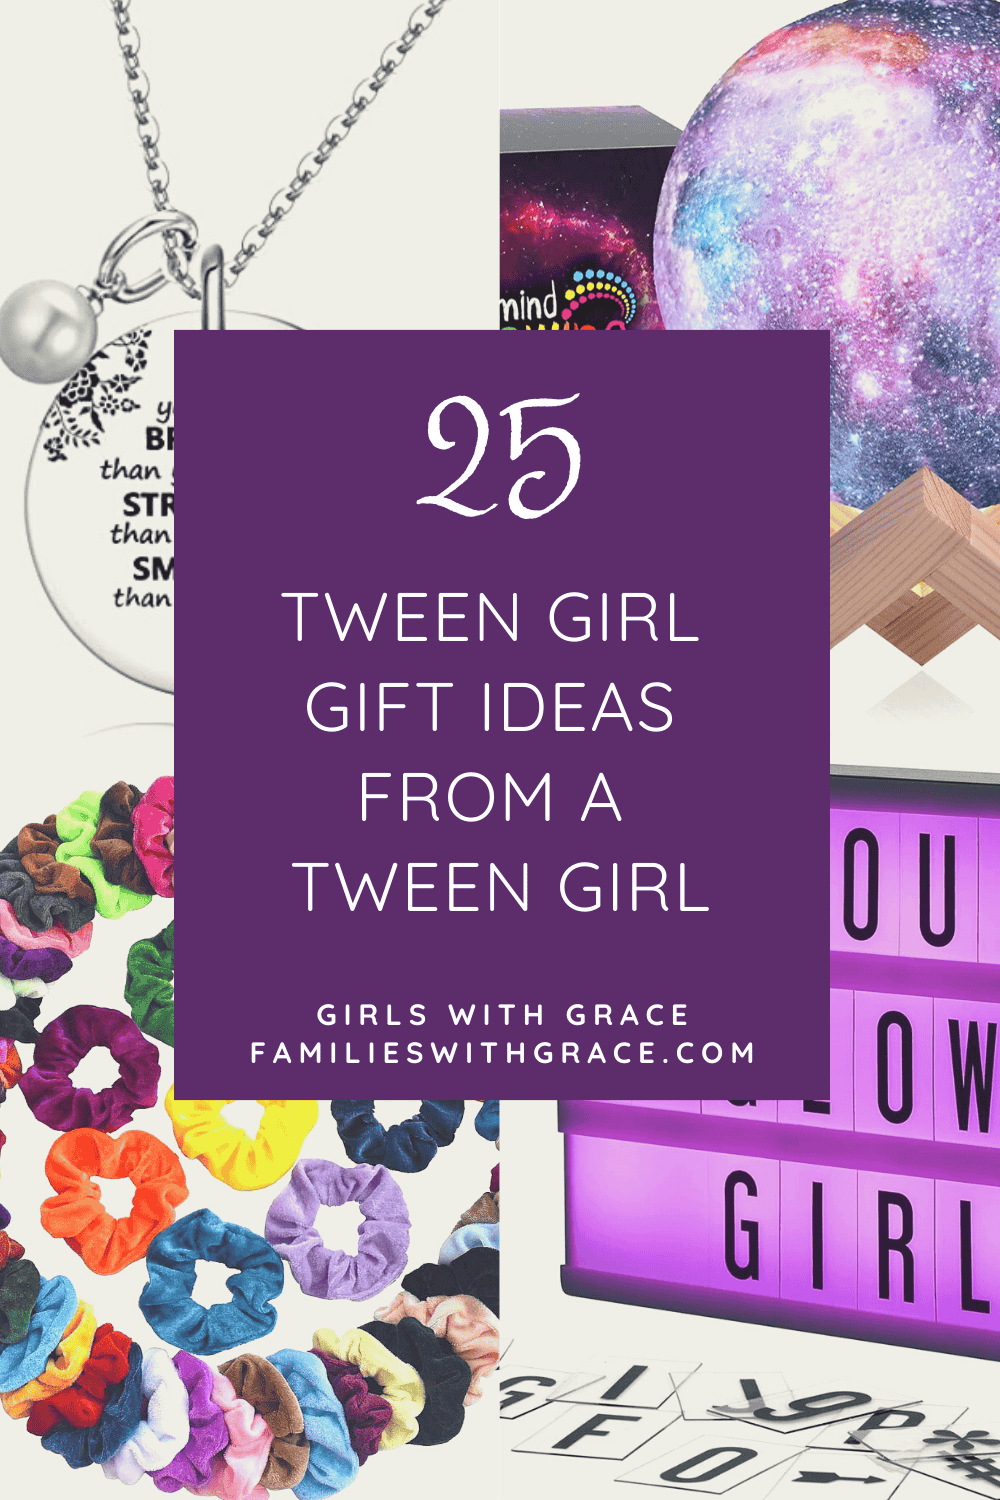 Tween girl gift ideas